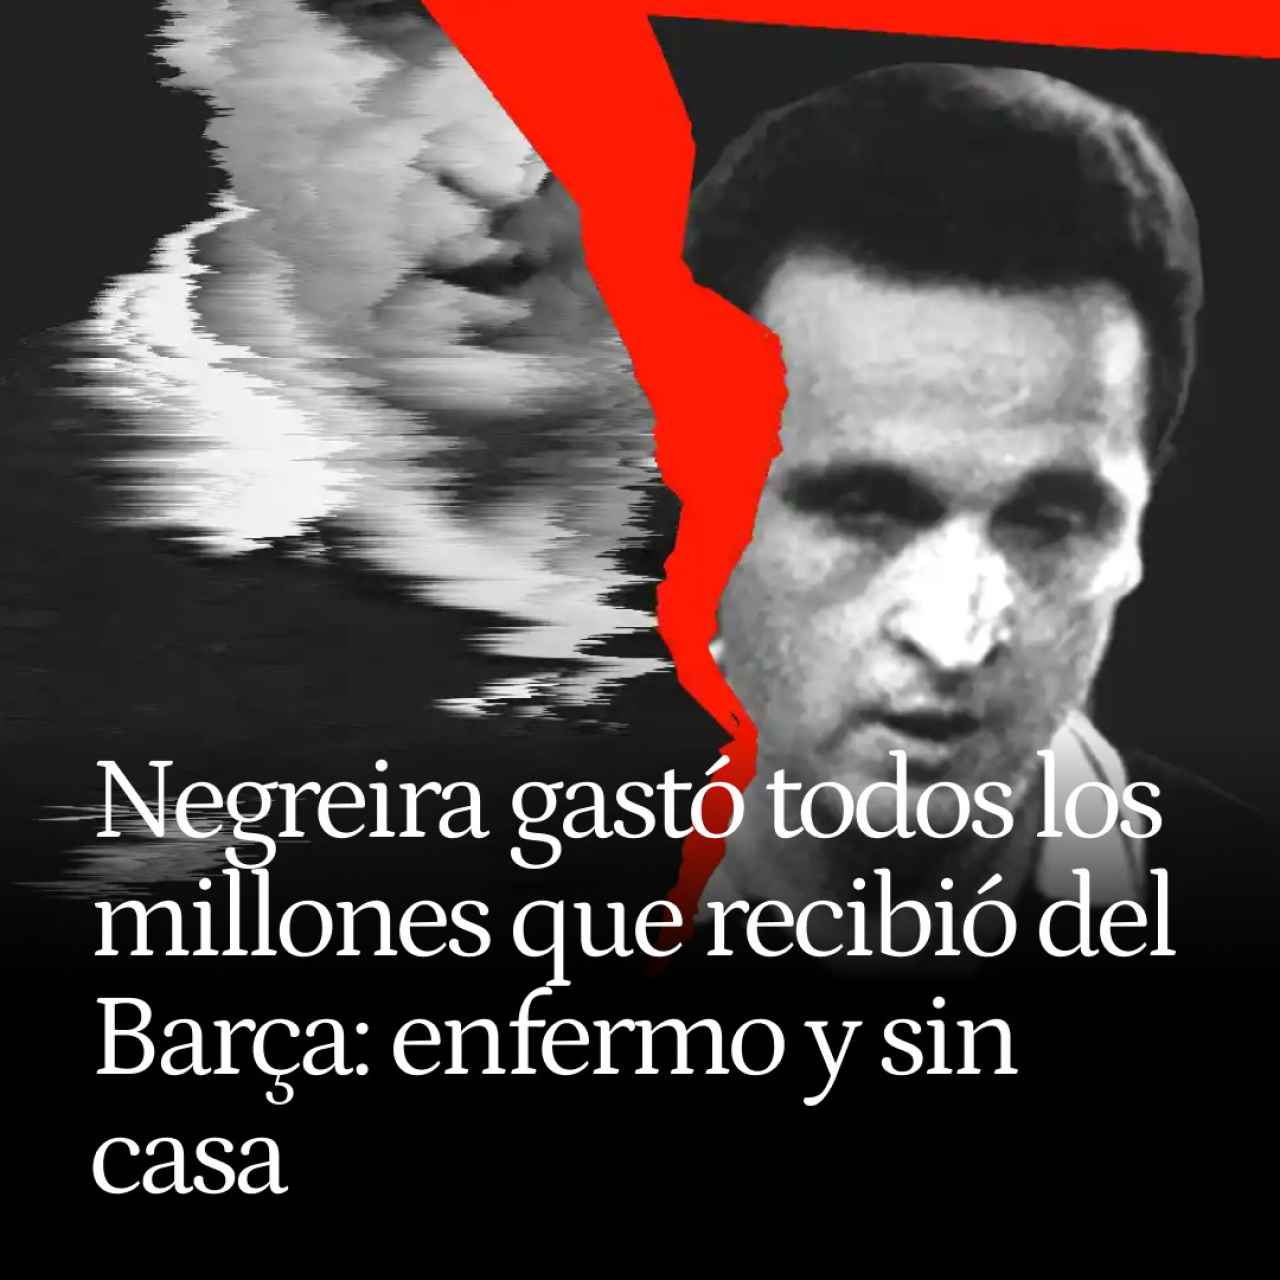 Enríquez Negreira gastó todos los millones que recibió del Barça: enfermo, sin casa y sin ahorros